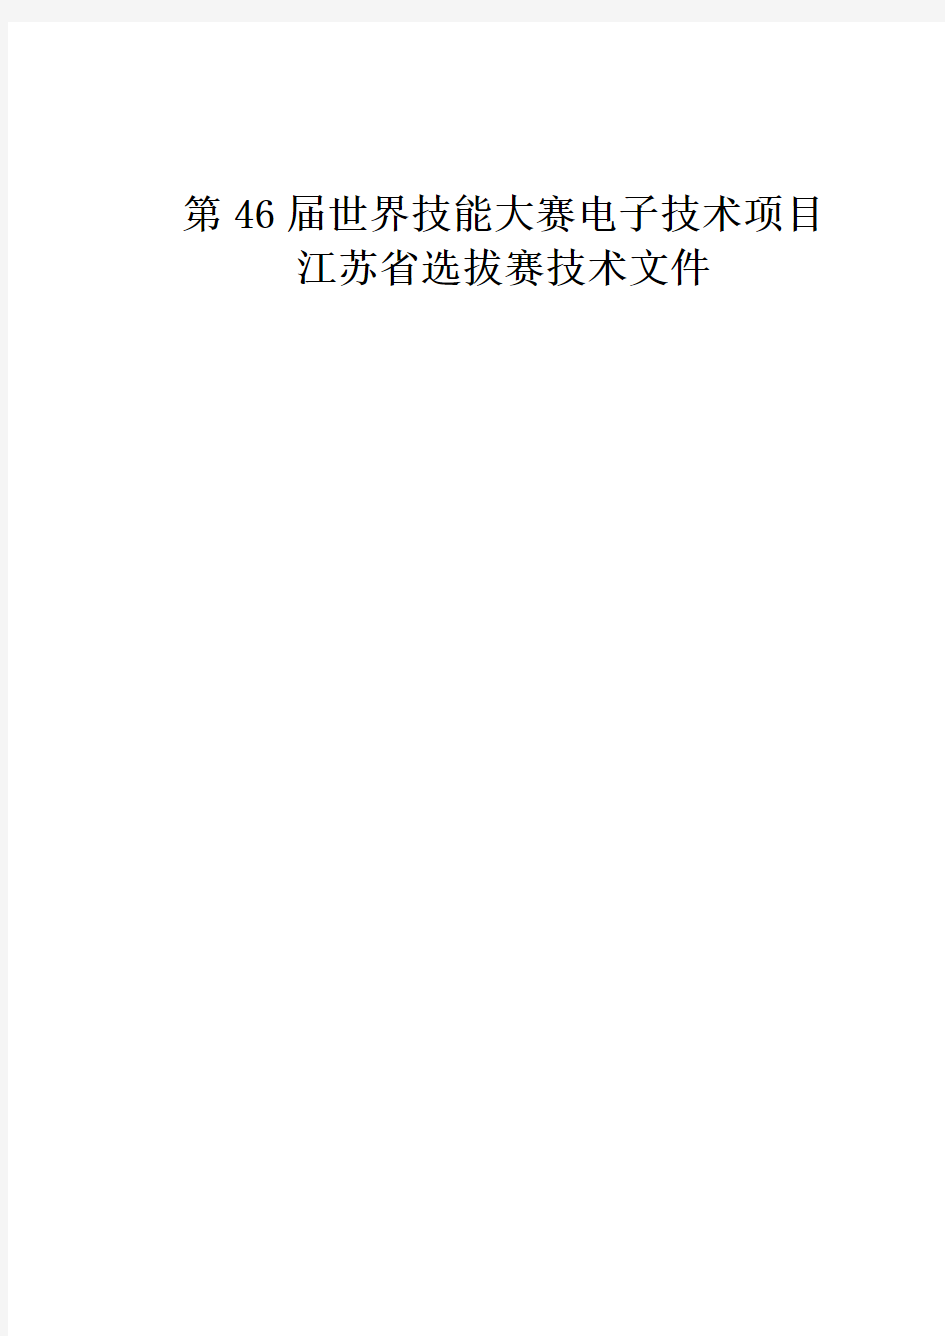 第46届世界技能大赛电子技术项目江苏省选拔赛技术文件